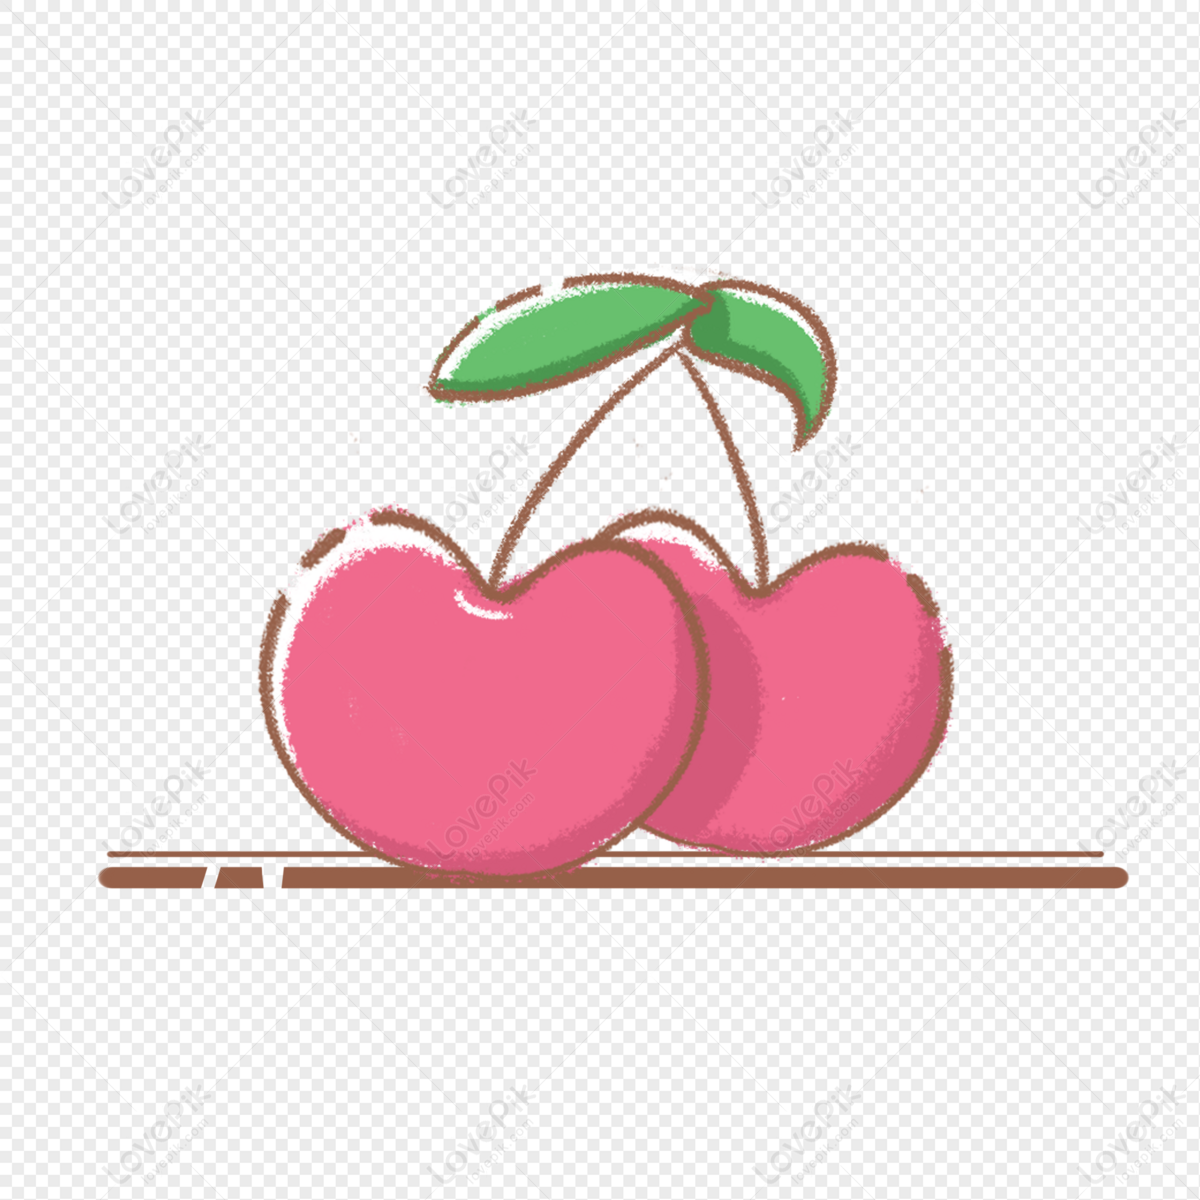 Hình ảnh Cherry Yếu Tố Nhỏ Dễ Thương PNG Miễn Phí Tải Về - Lovepik